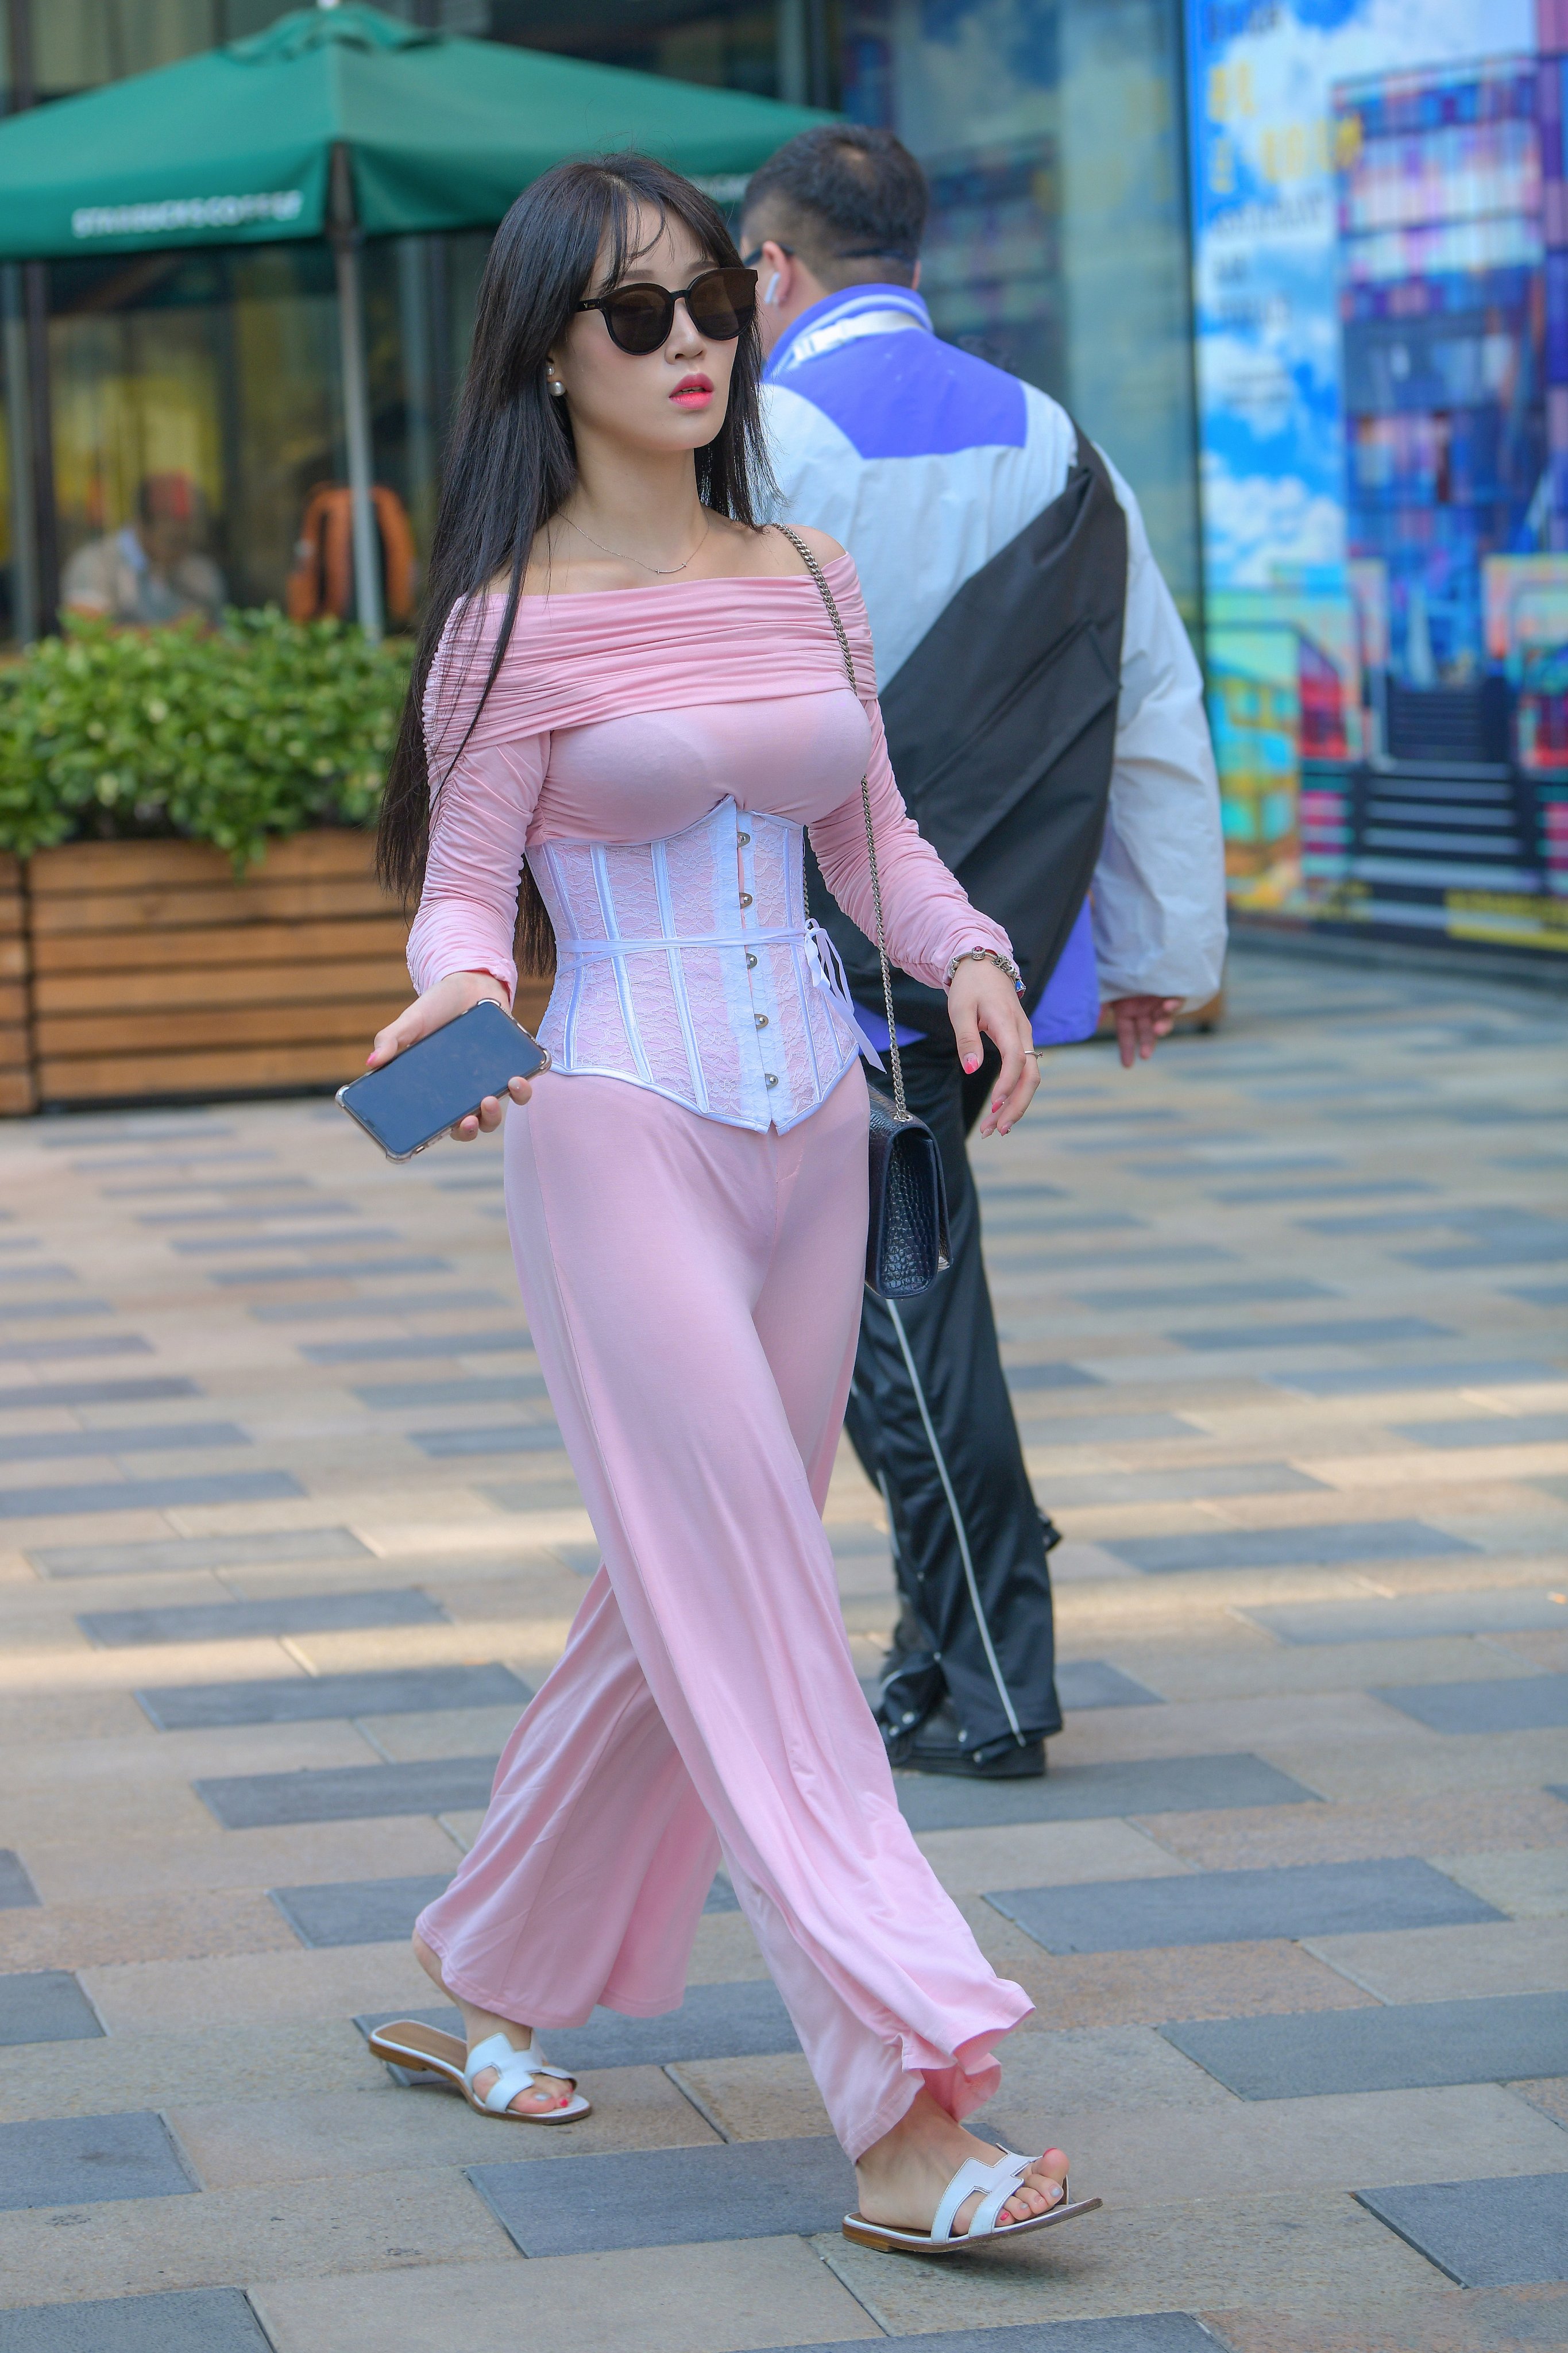 街拍:广州街头时尚美女!粉色薄纱连体衣清凉性感!美丽曲线